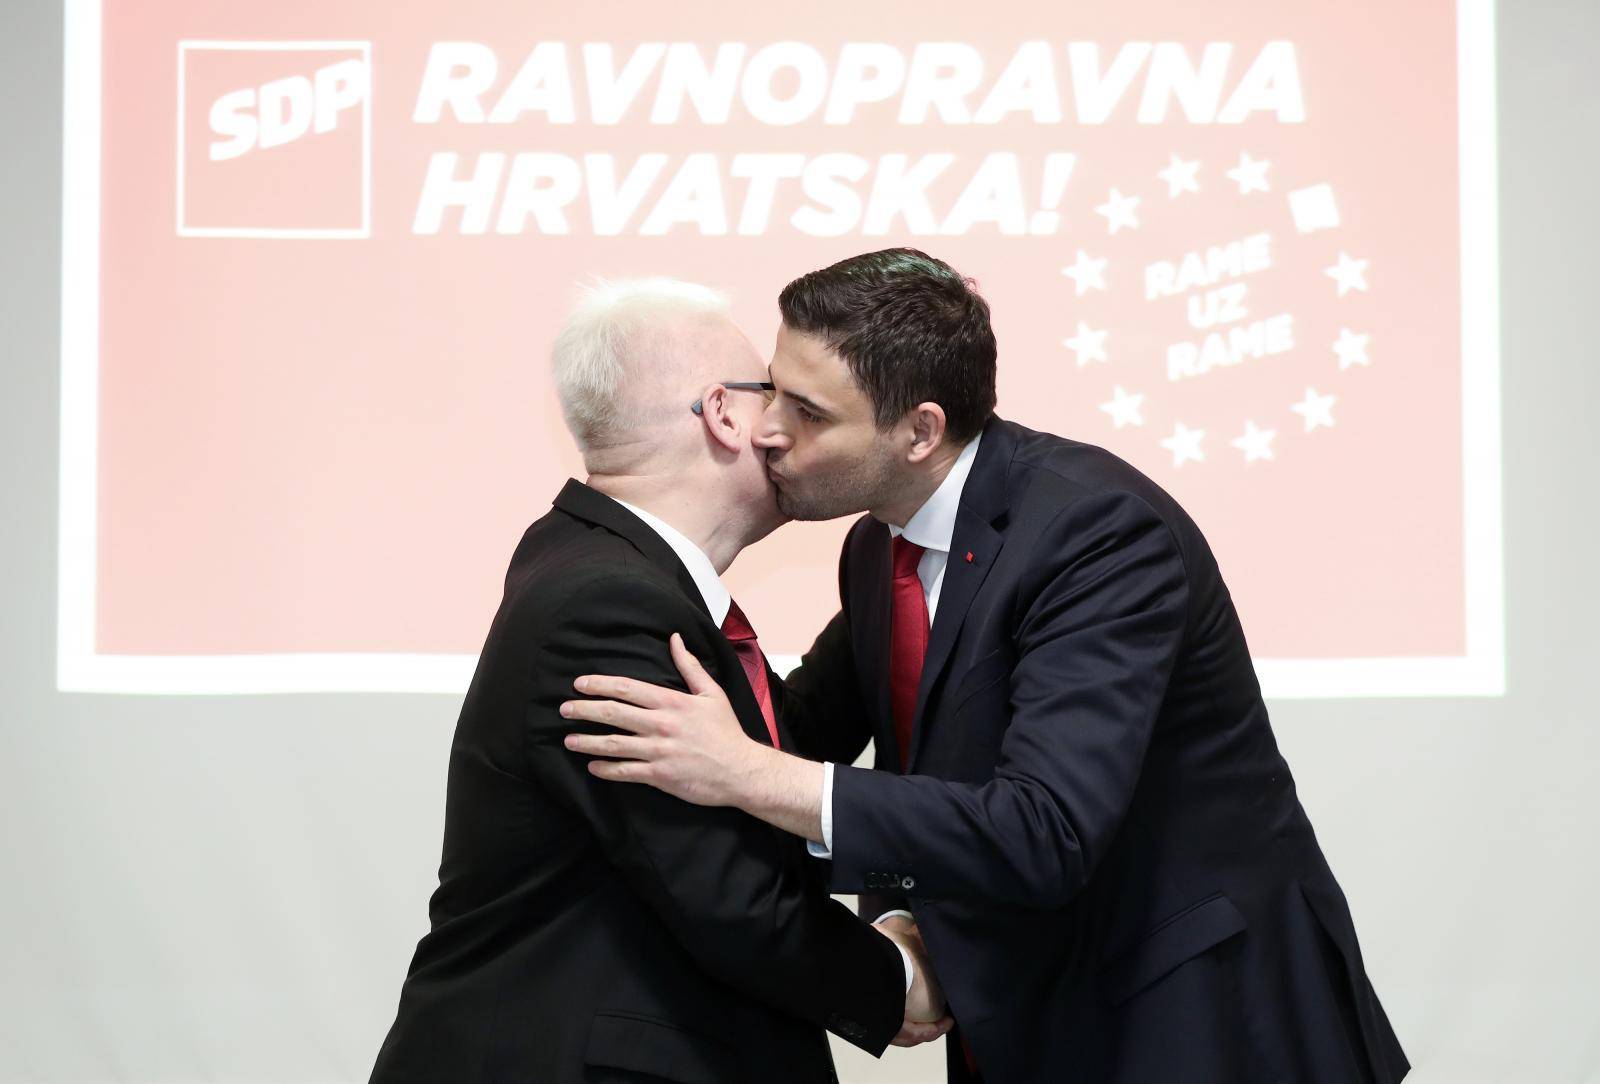 Potpisan sporazum o udruÅ¾ivanju i prikljuÄenju stranke Naprijed Hrvatska SDP-u